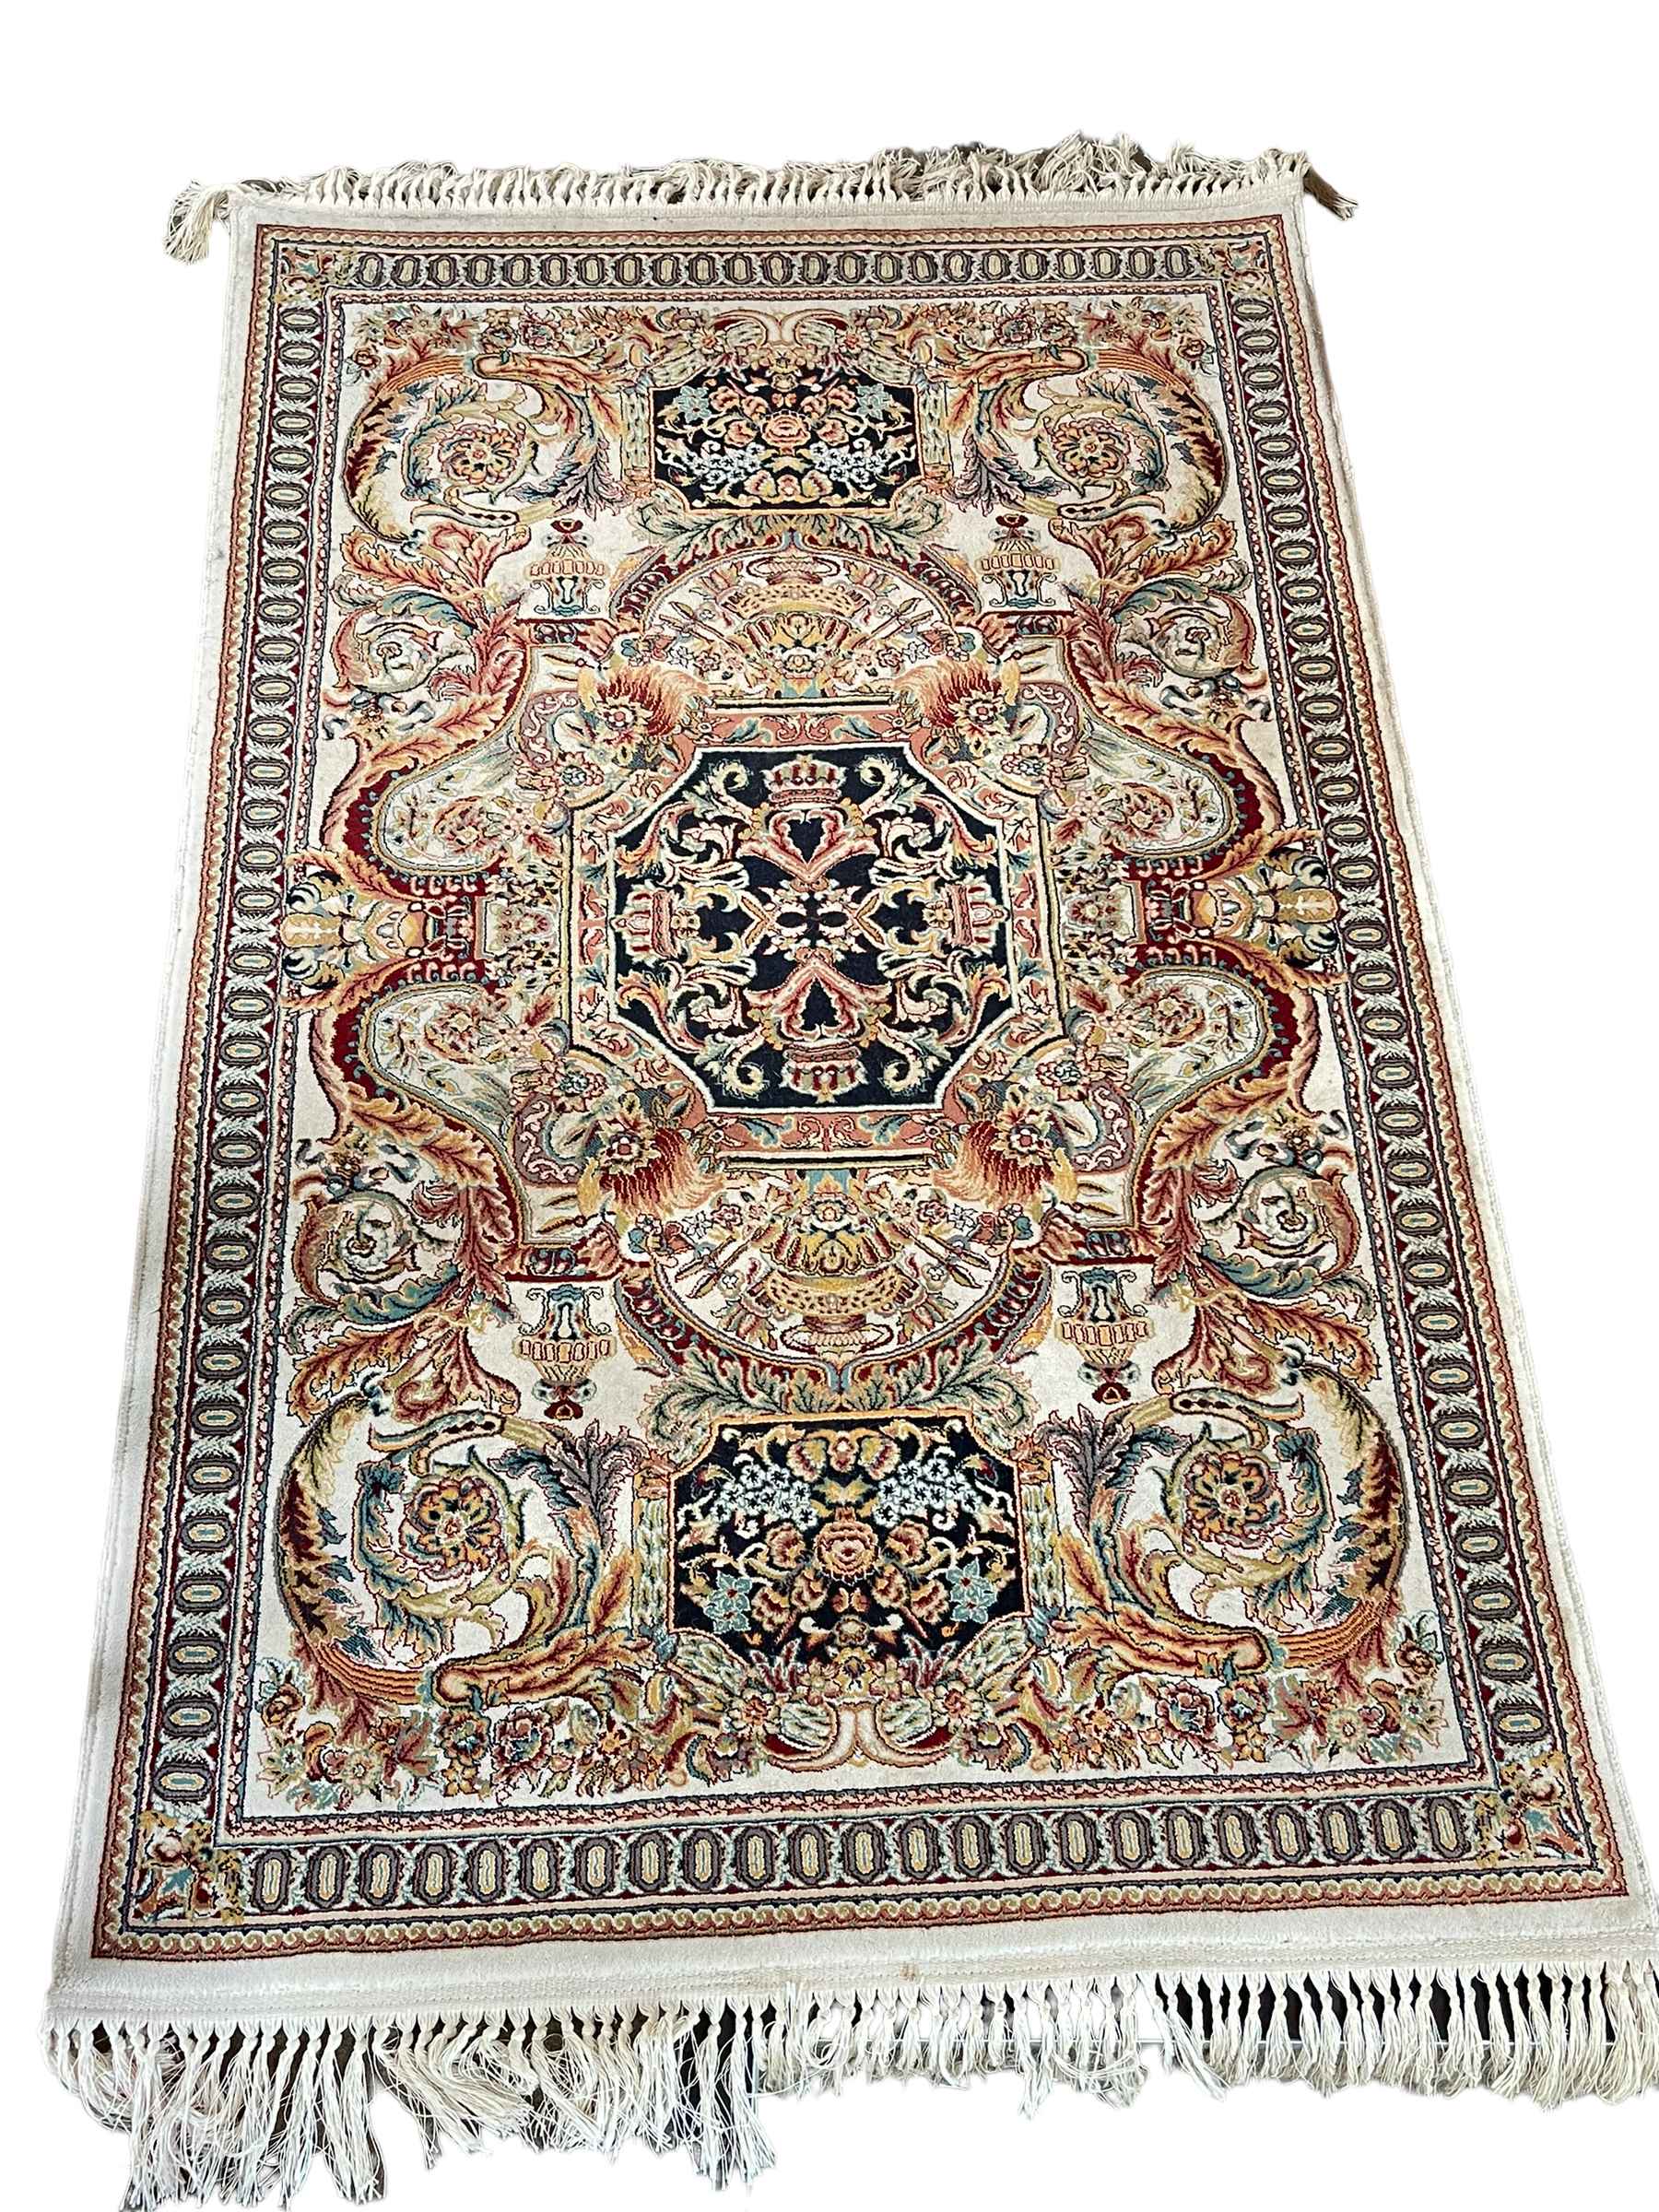 Pair Persian Kashan rugs 1.60 by 0.97.